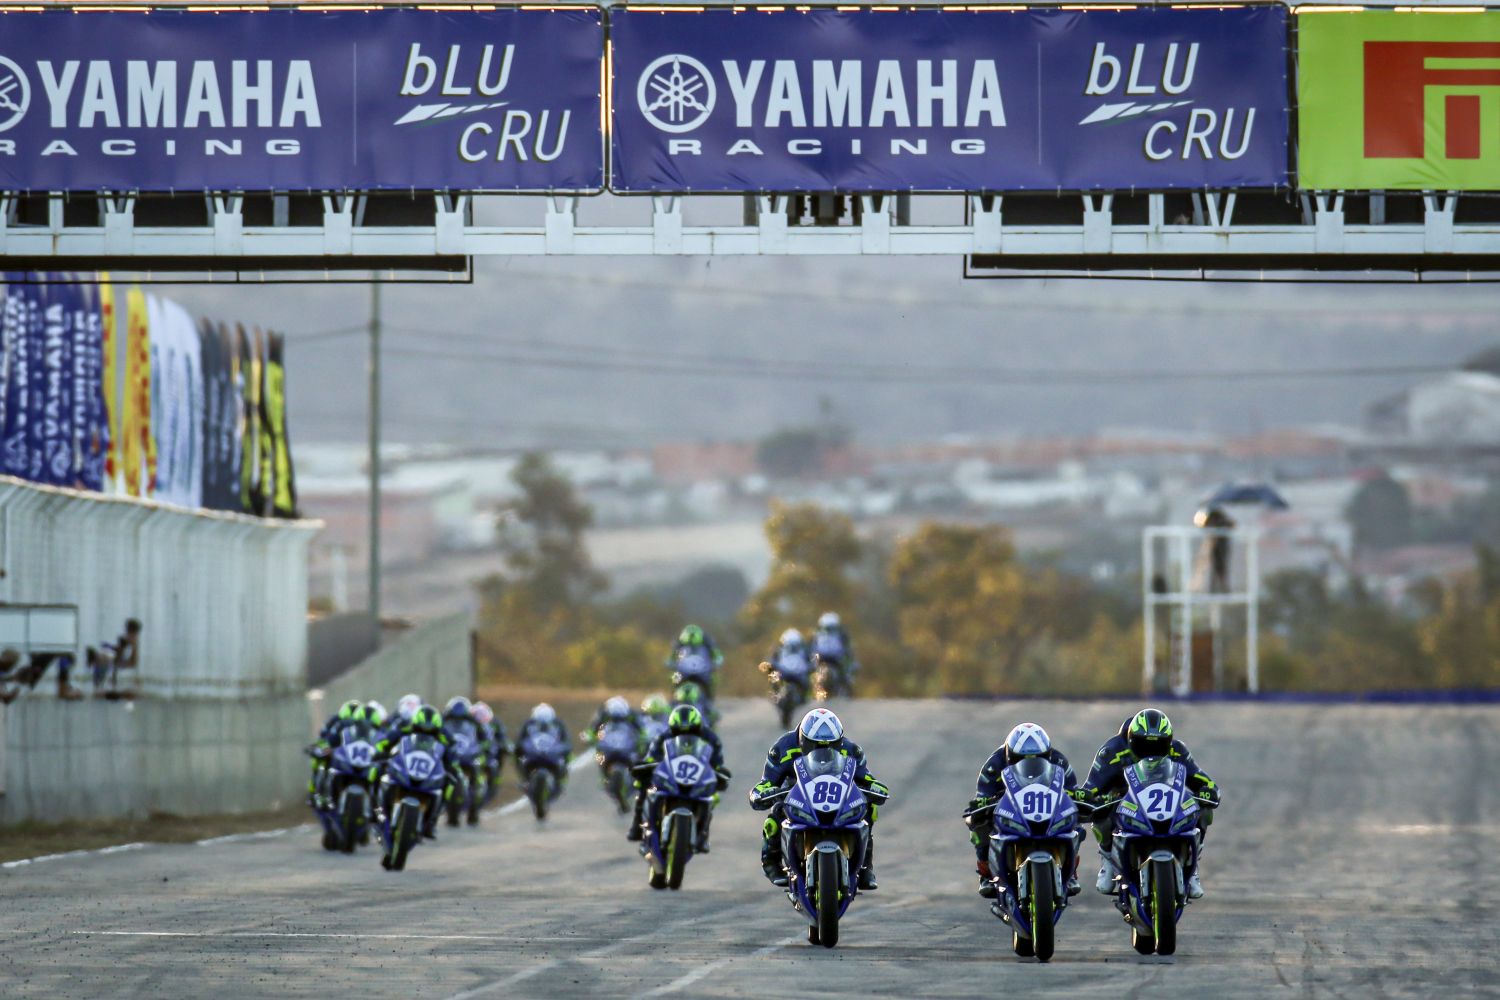 Inscrições abertas para Yamalube R3 bLU cRU Cup 2021 - Yamaha Racing Brasil